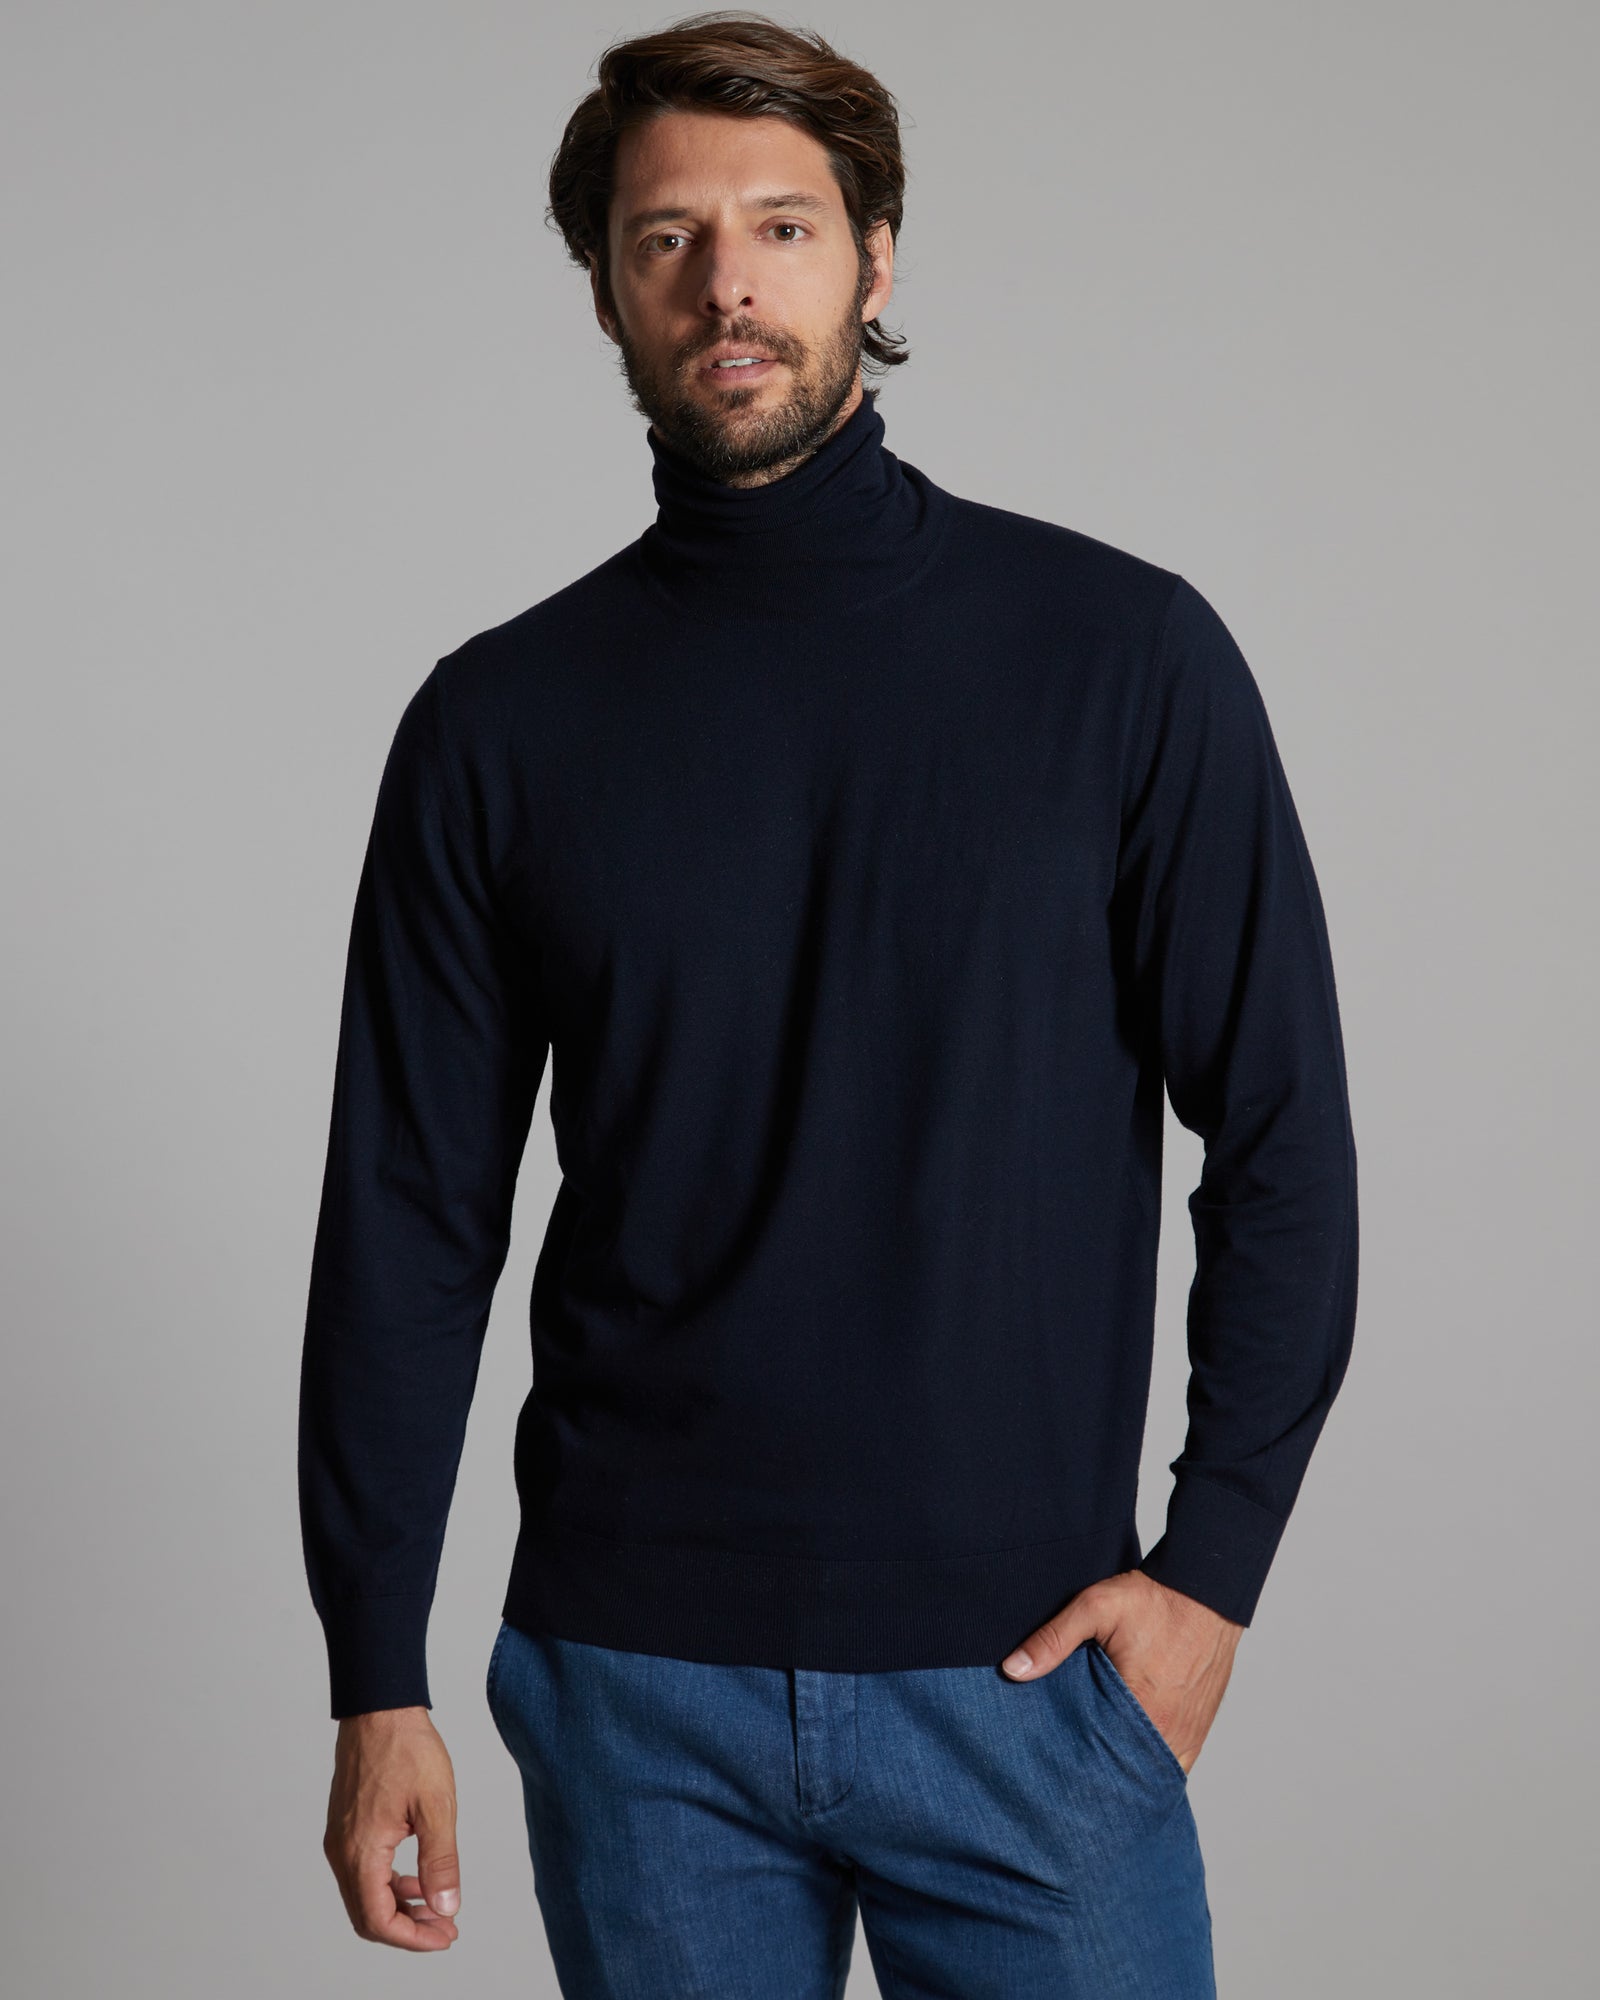 12.8 Kid Wool blue turtleneck sweater